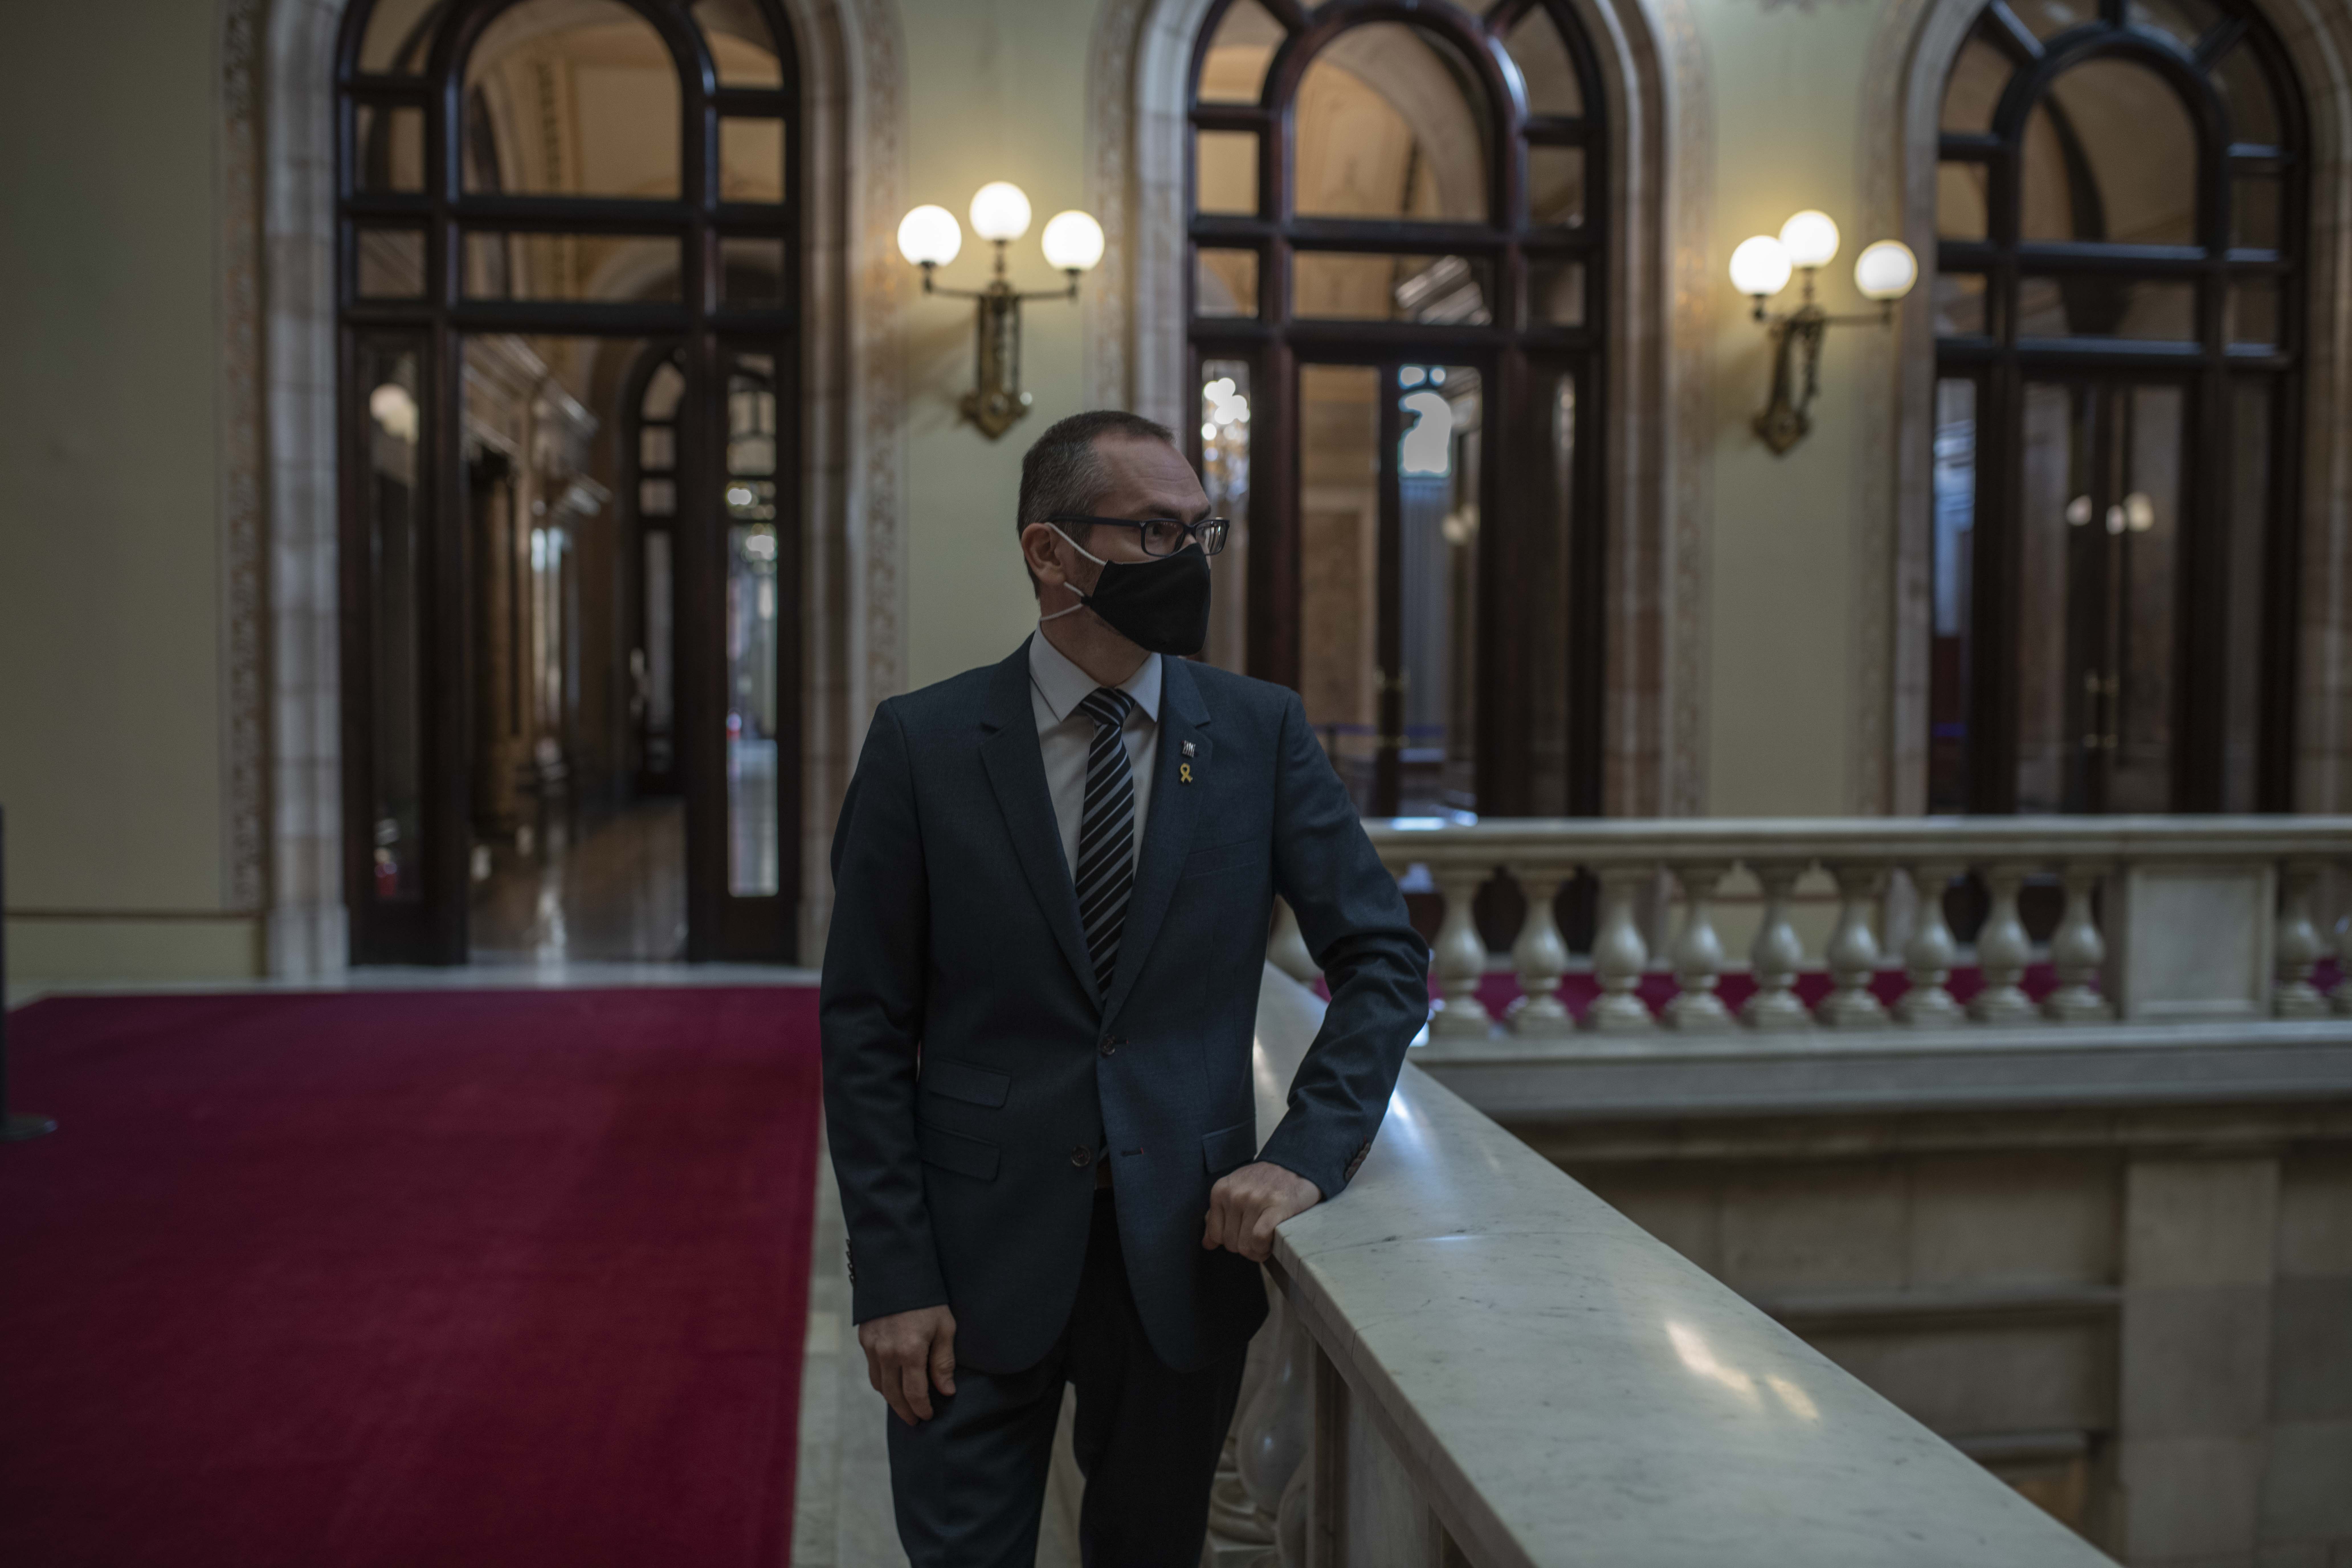 Costa renuncia a ocupar l'escó de Puigdemont i el substituirà Glòria Freixa